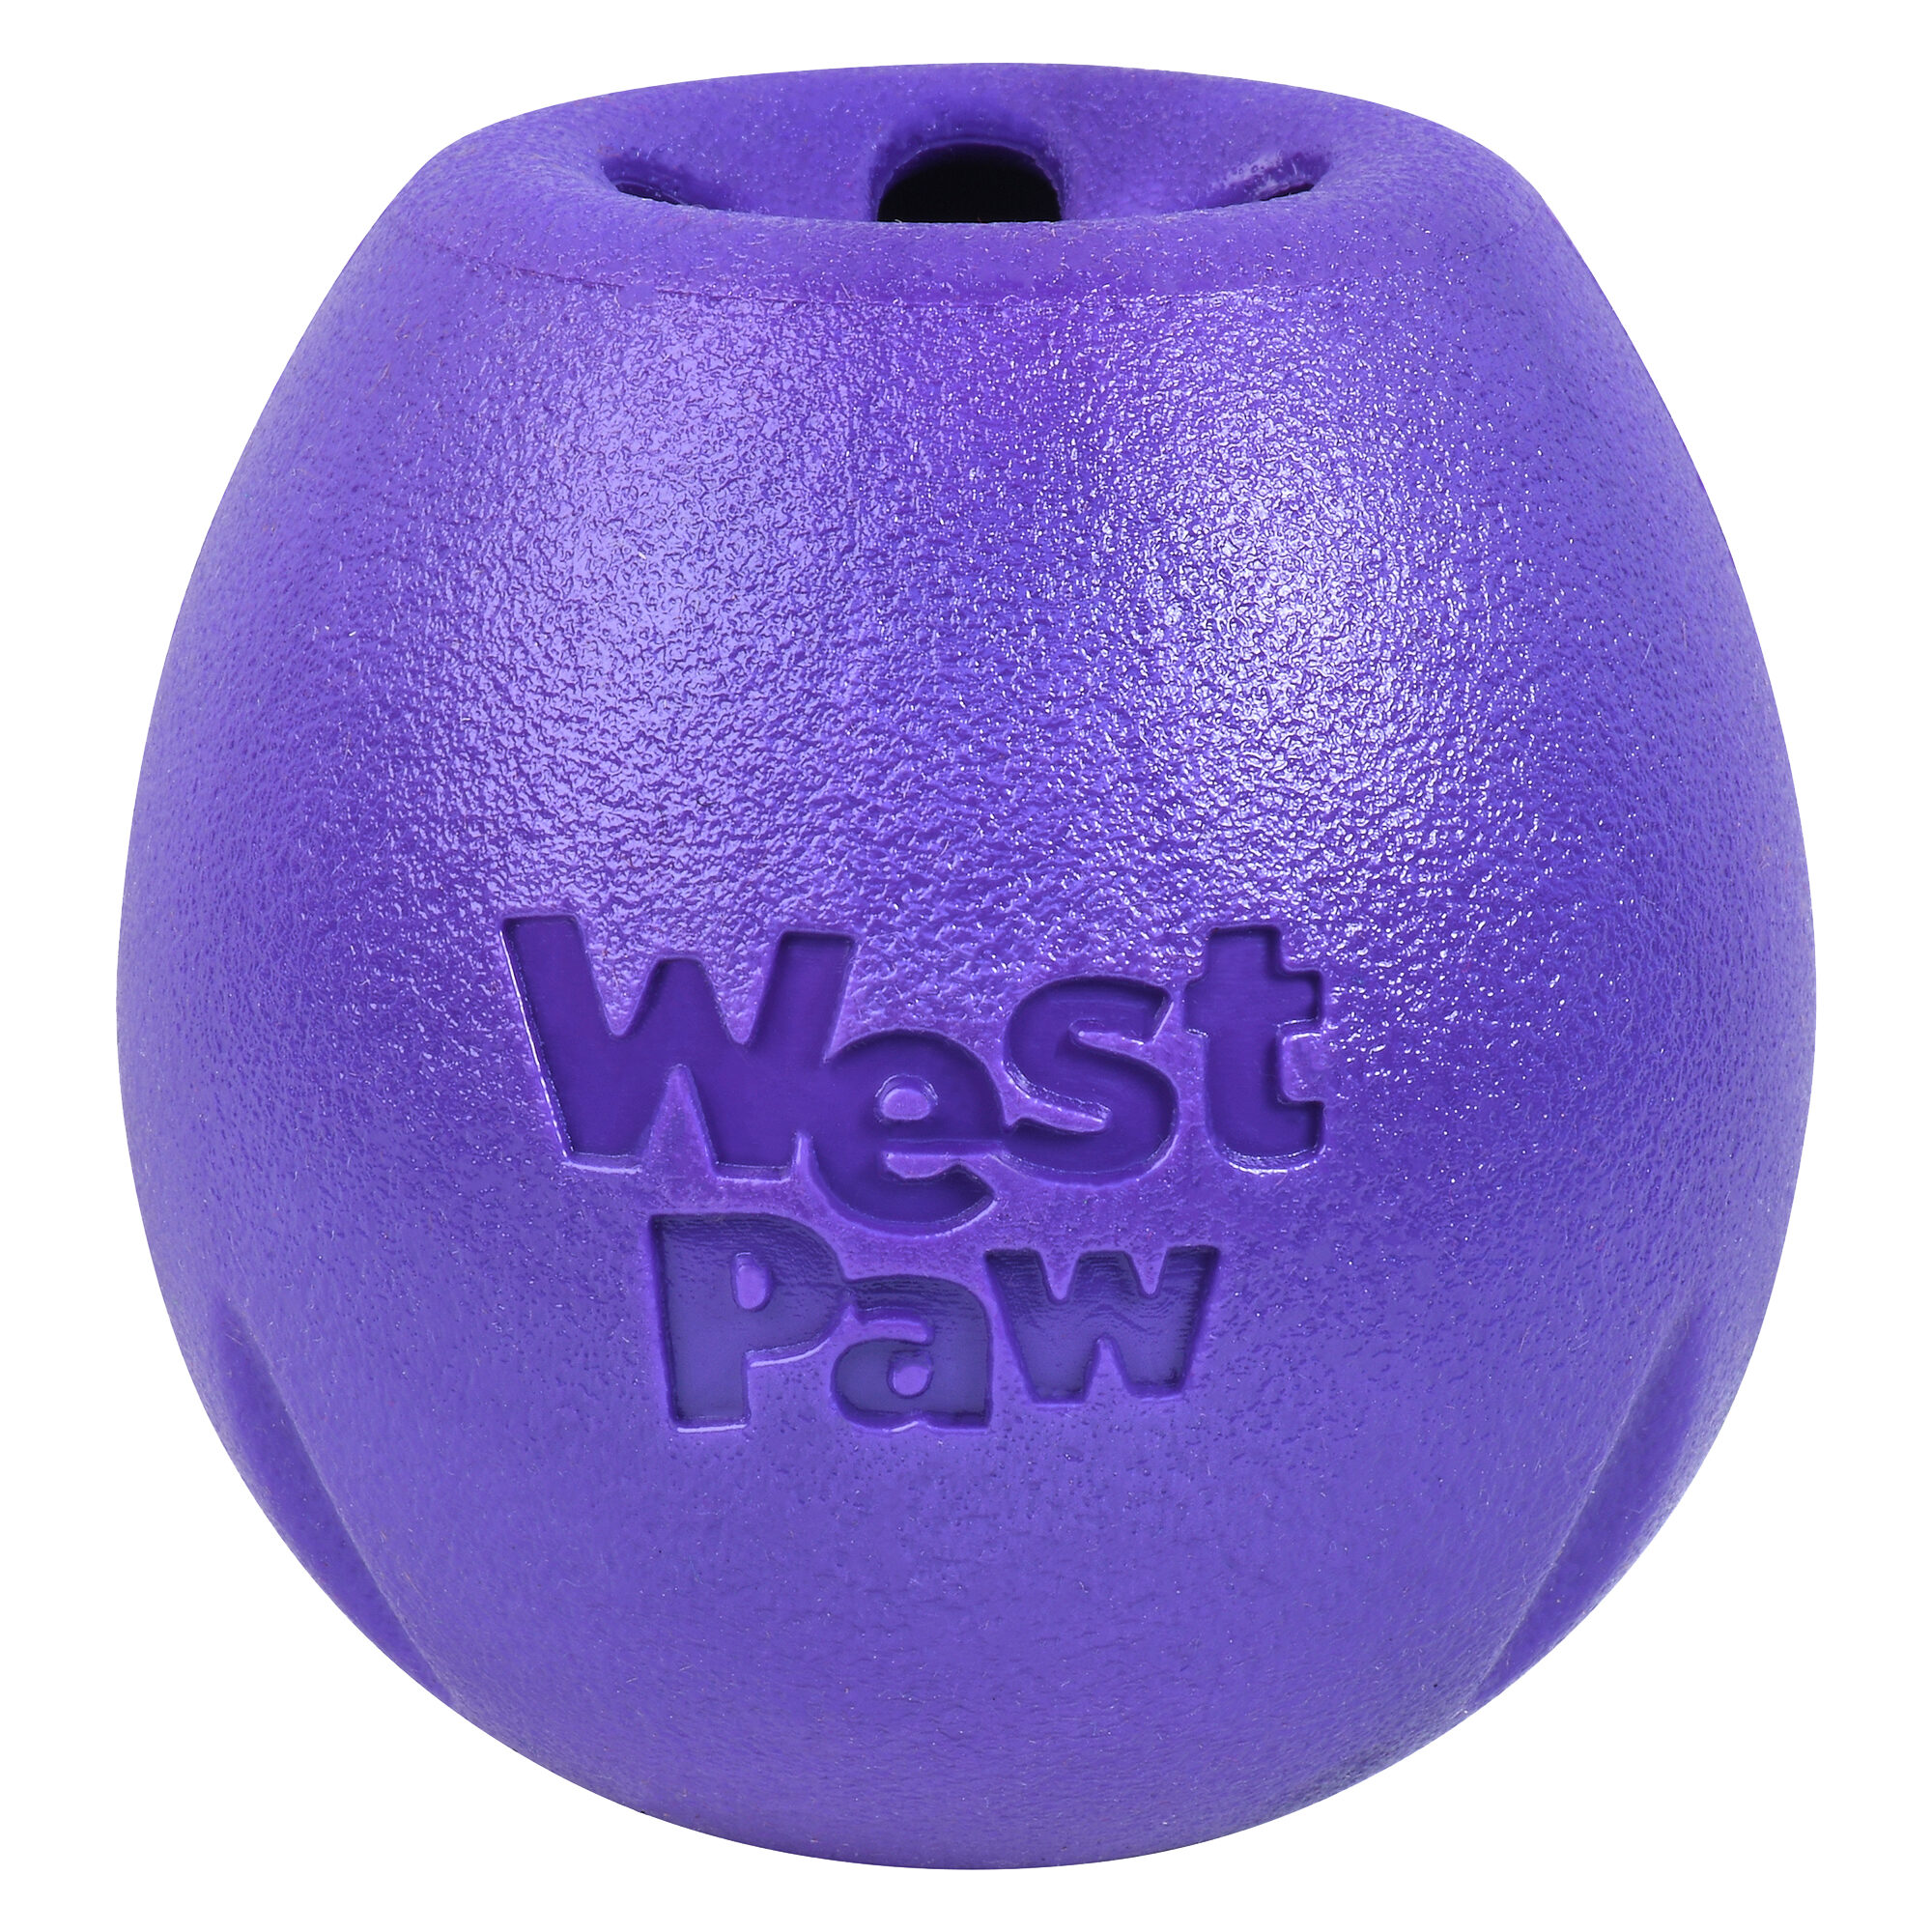 WestPaw Dog Spielzeug Echo Rumbl L orange 10cm